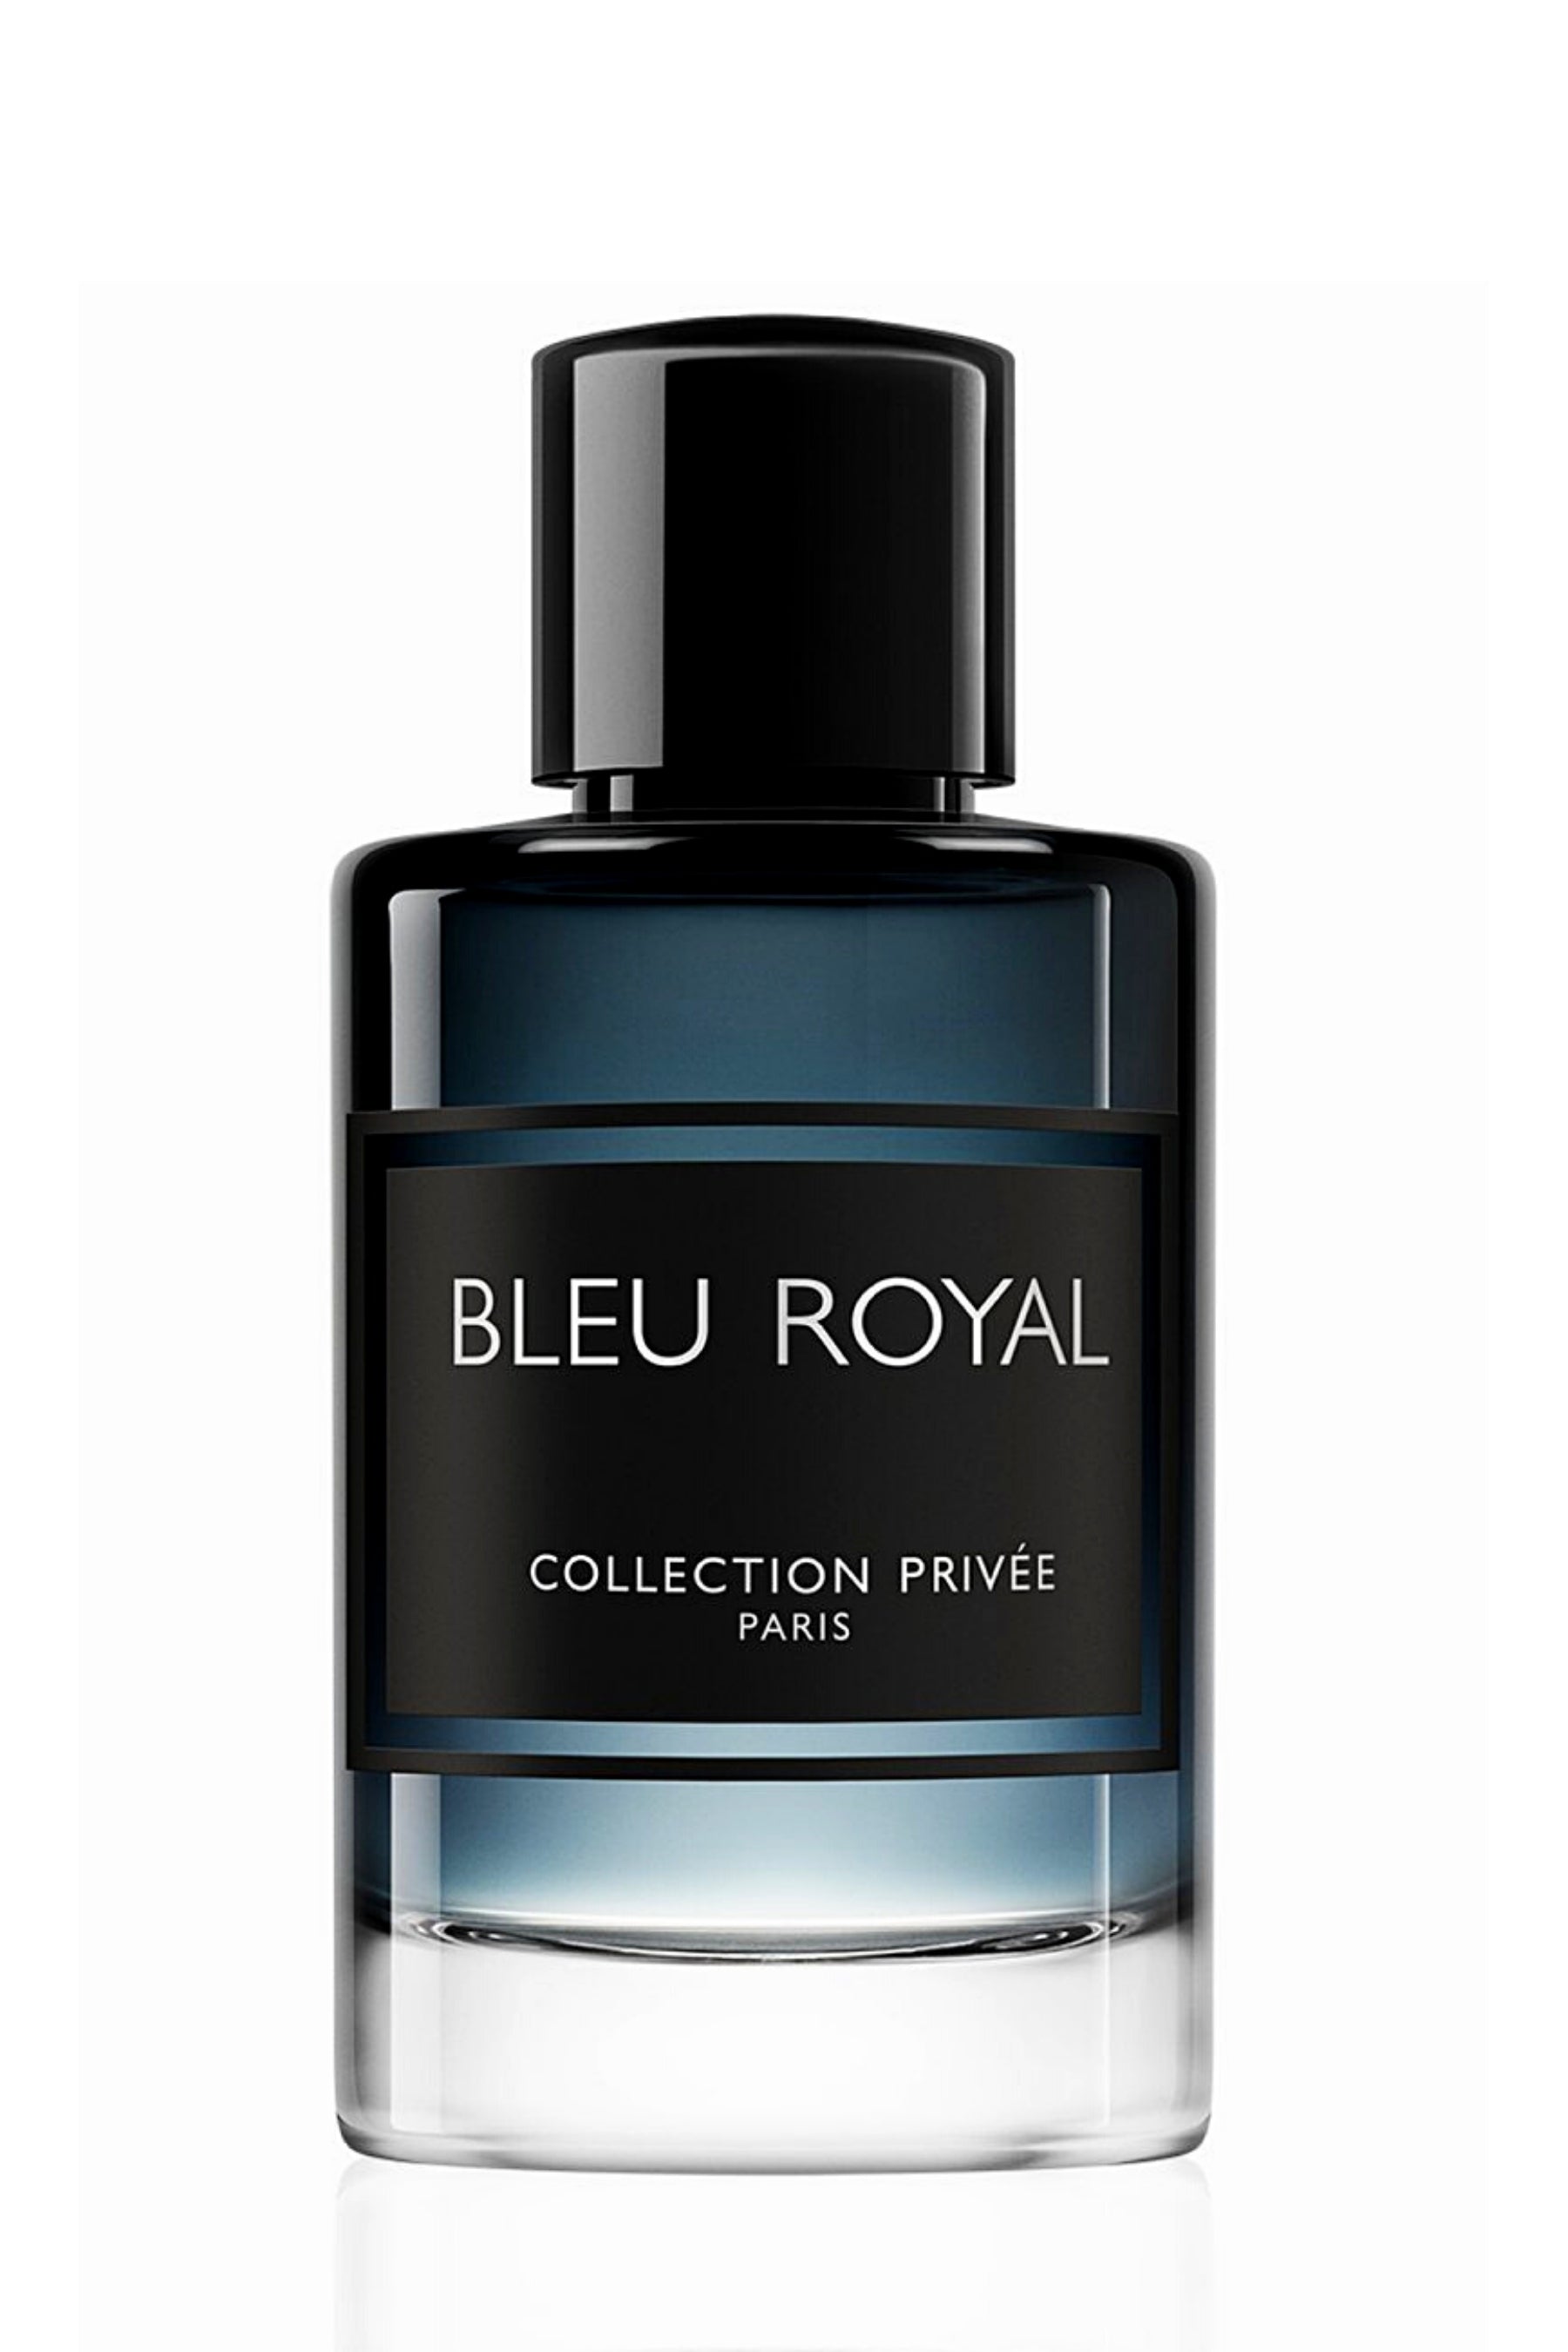 Bleu Royal Collection Privee Eau De Parfum Spray 3.4 oz